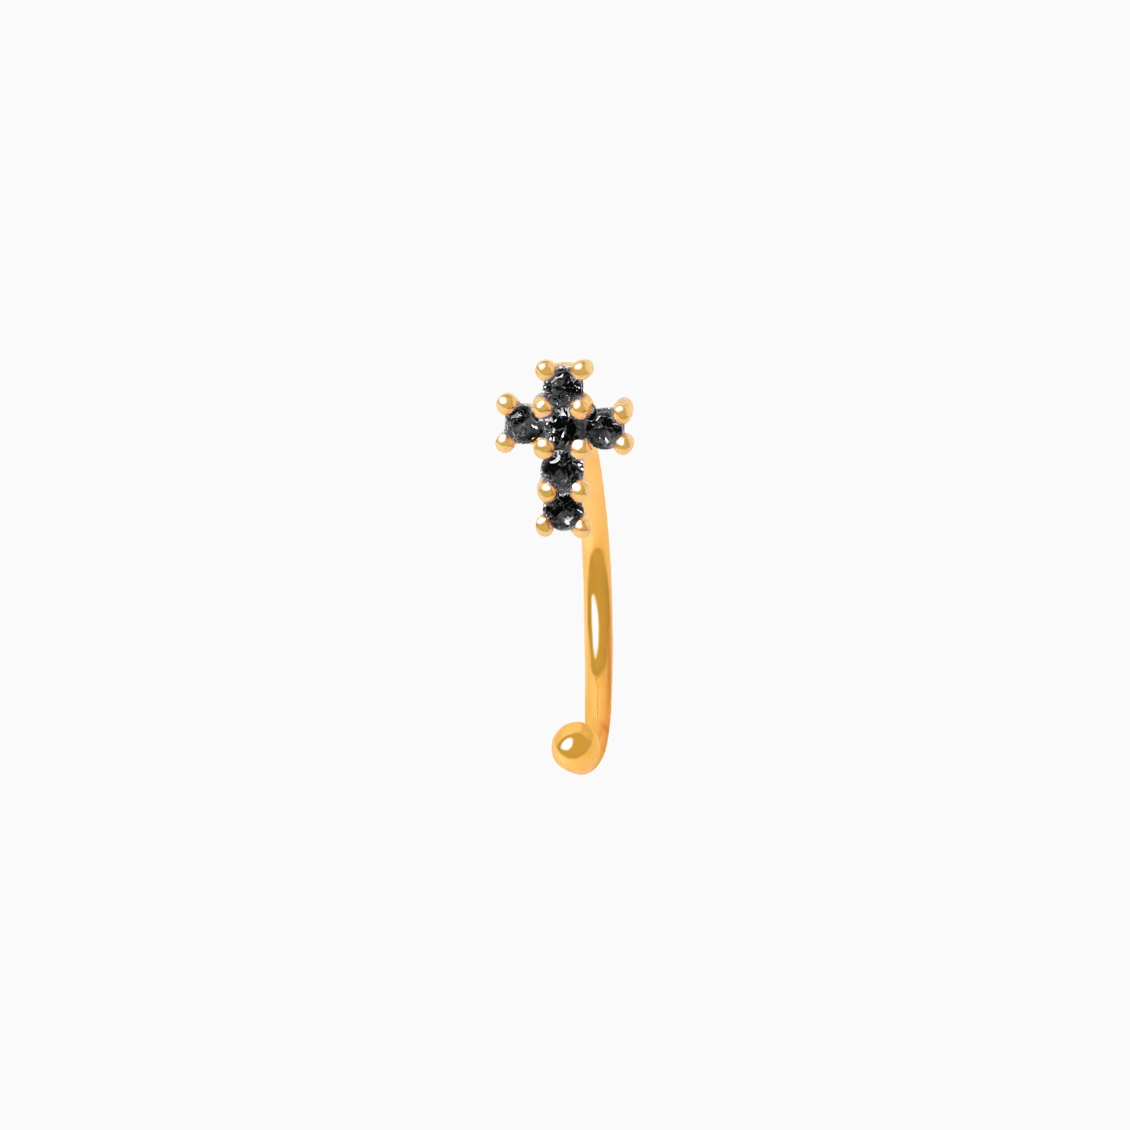 Medio arete en oro amarillo de 18K piercing cruz con brillantes negros